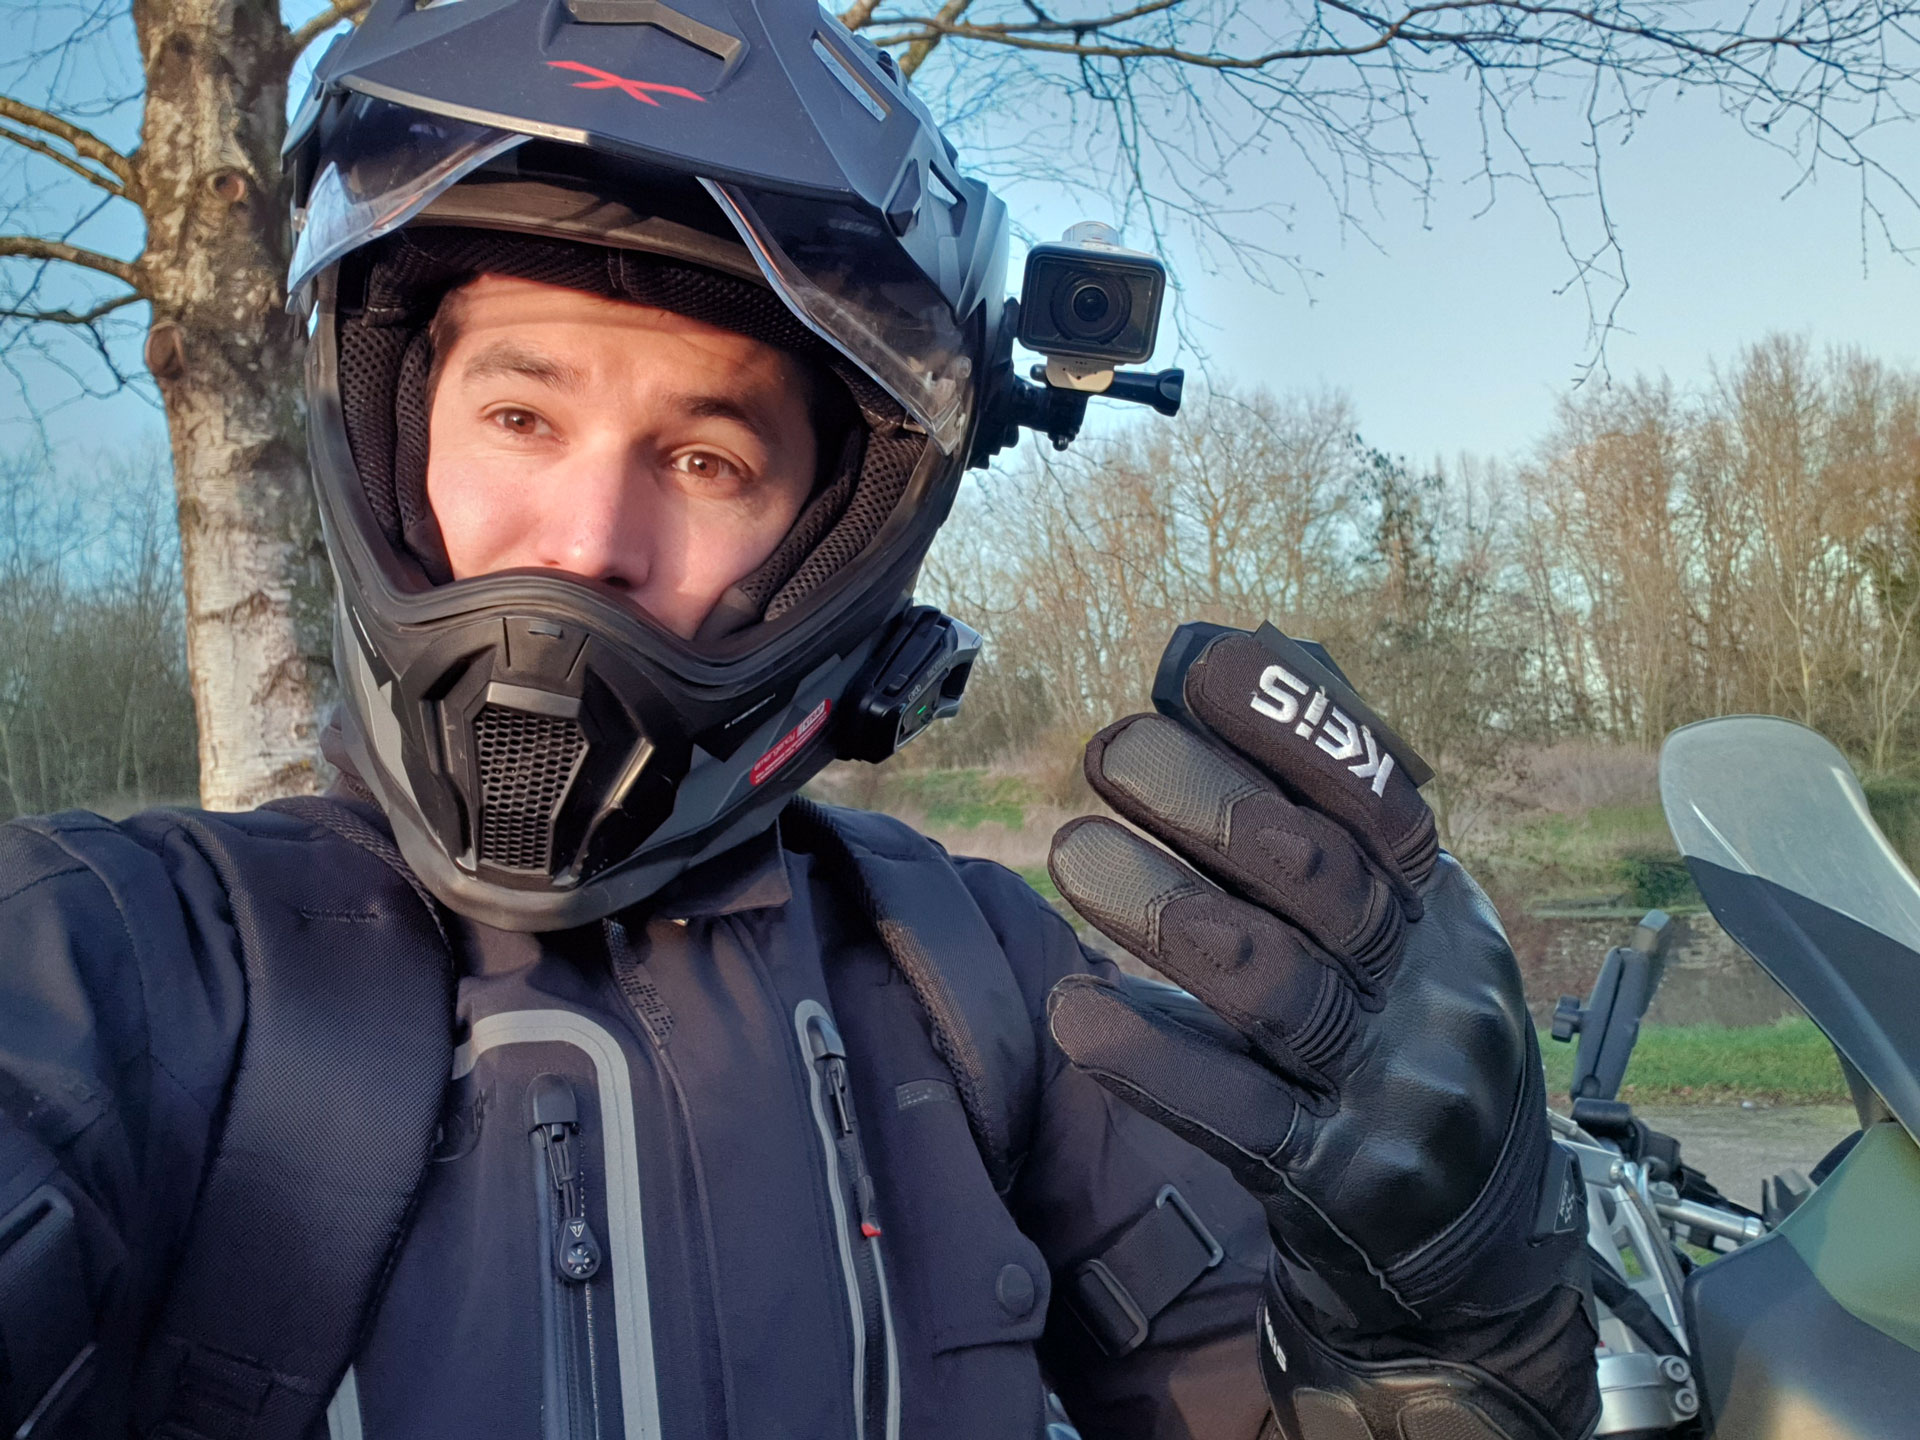 Test des gants hiver chauffants Keis G601 : ils font fi(l) du froid ! –  Motard Adventure